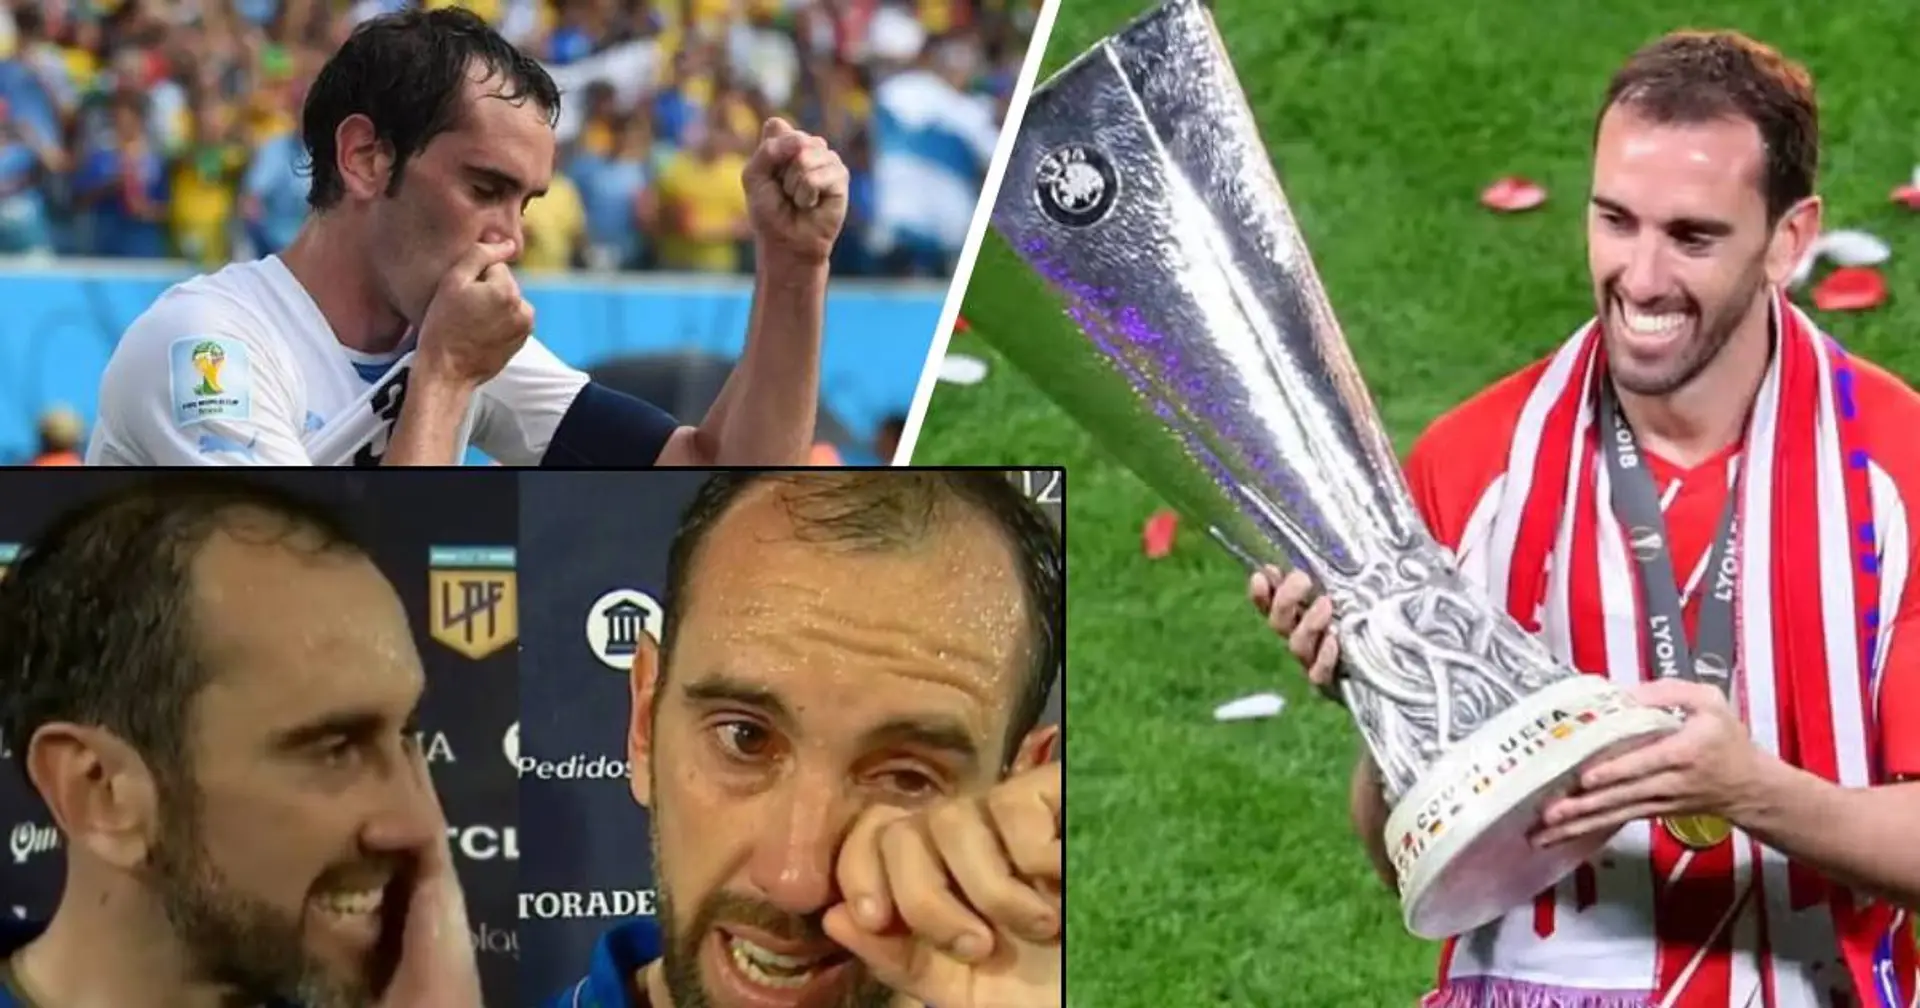 "Volevo farlo così": la leggenda di Atlético Madrid e Uruguay si ritira in lacrime